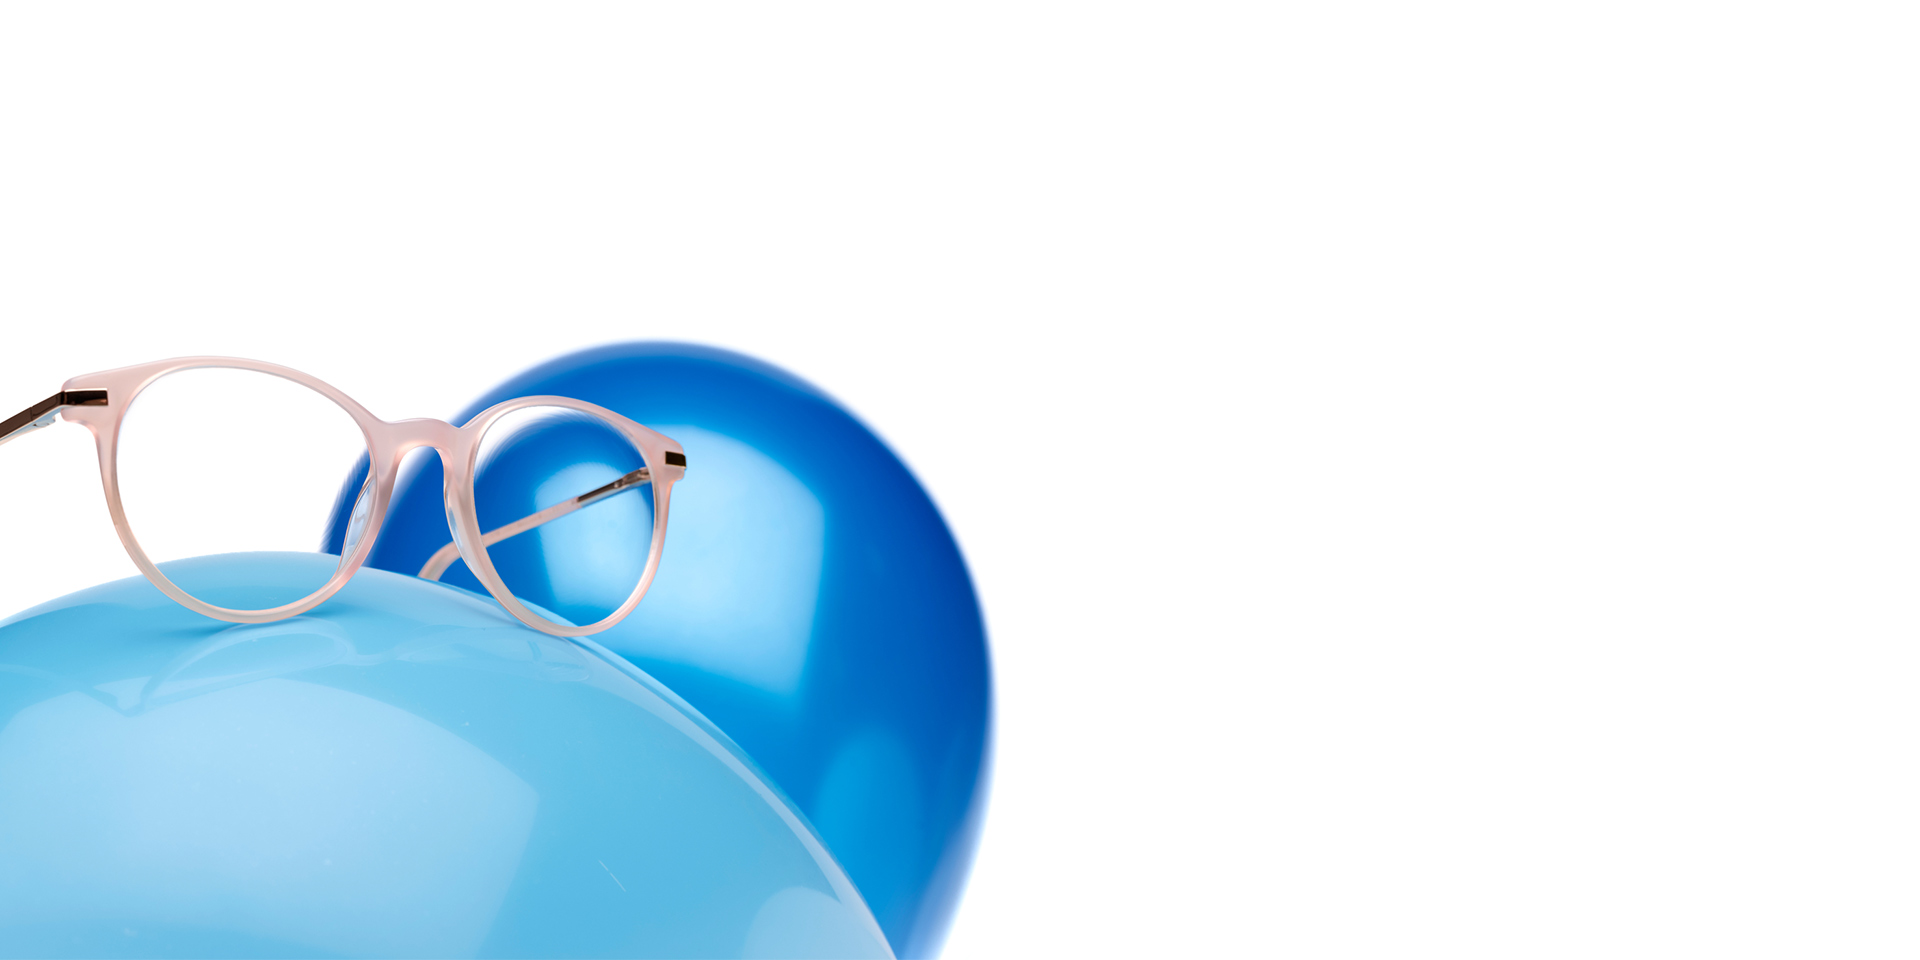 As lentes ZEISS MyoCare numa armação bege rosado são mostradas num balão azul claro. Em segundo plano está outro balão azul ligeiramente mais escuro.